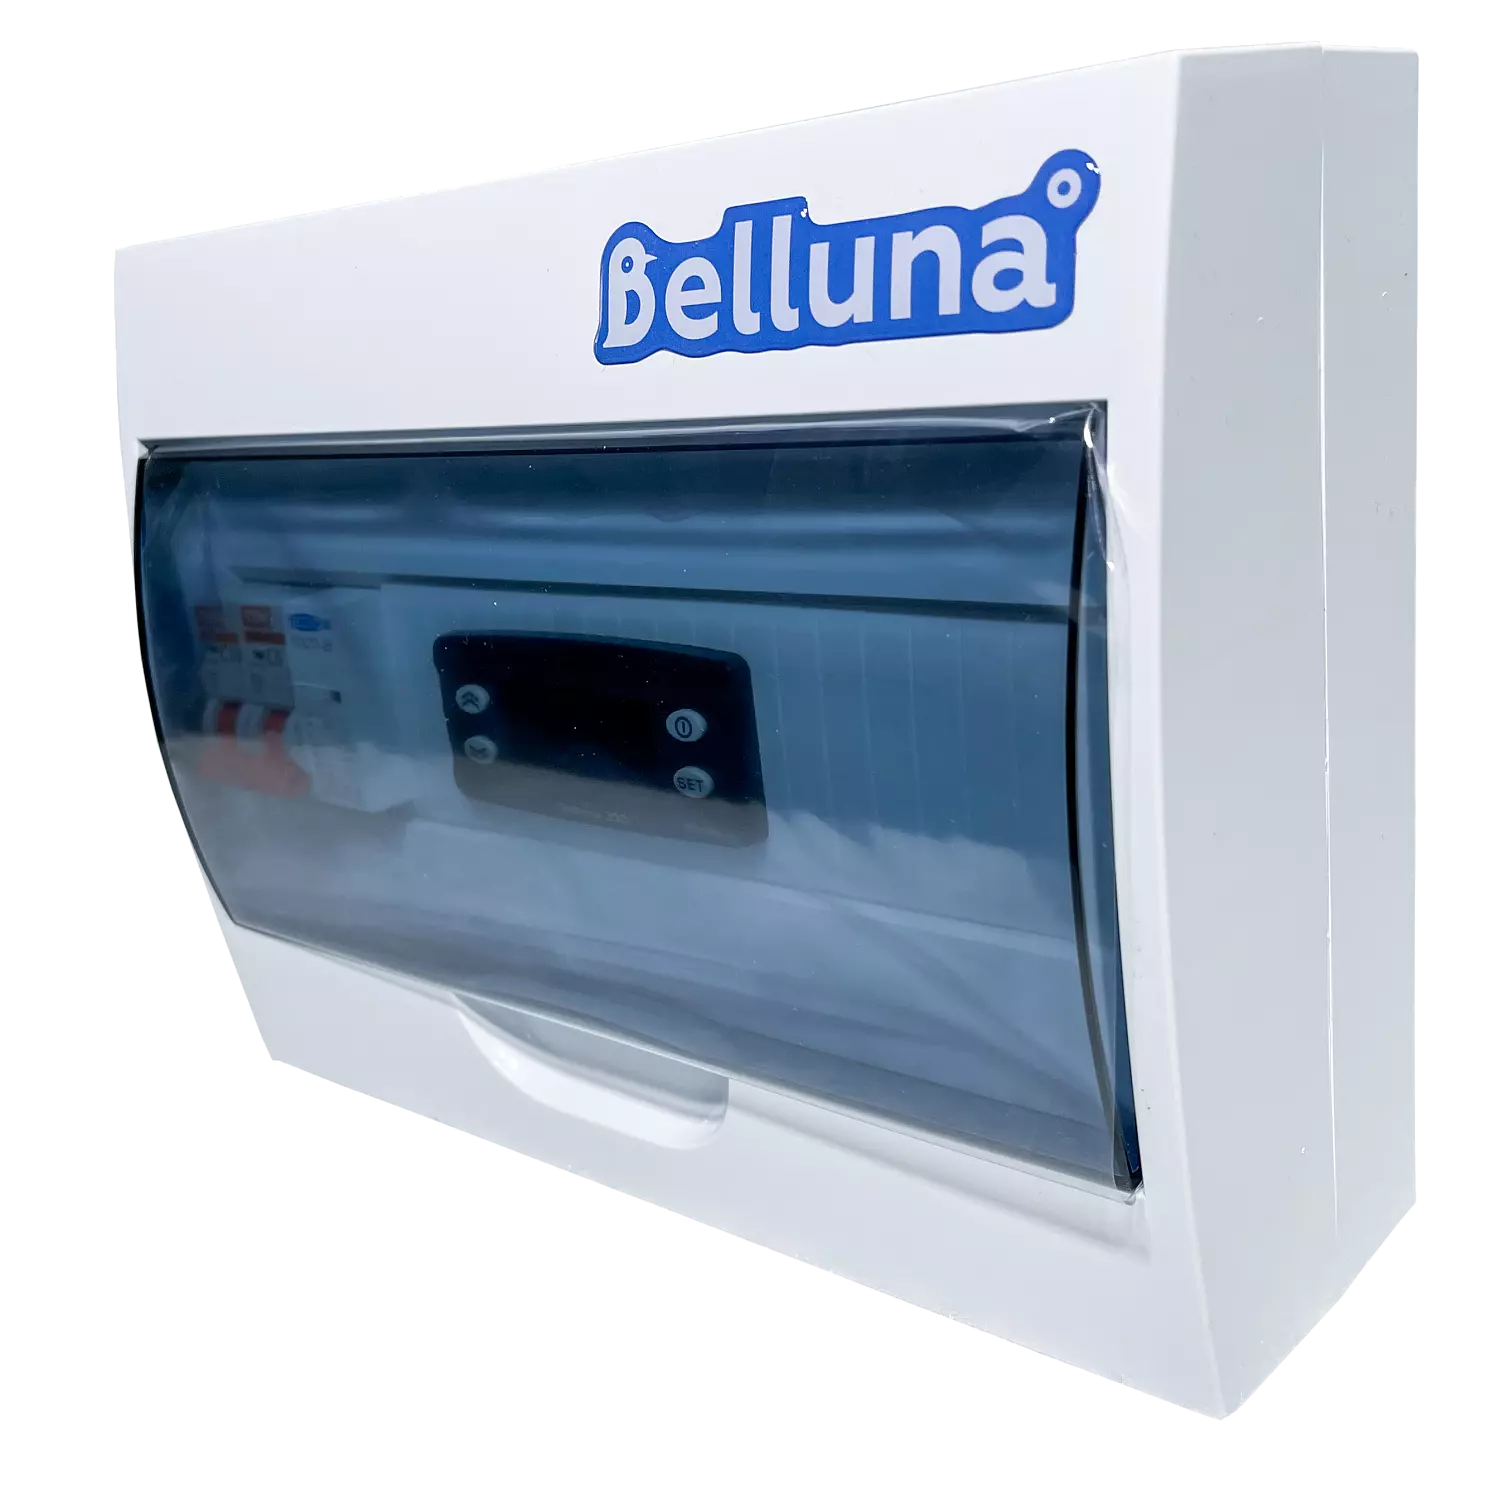 сплит-система Belluna S342 Пермь